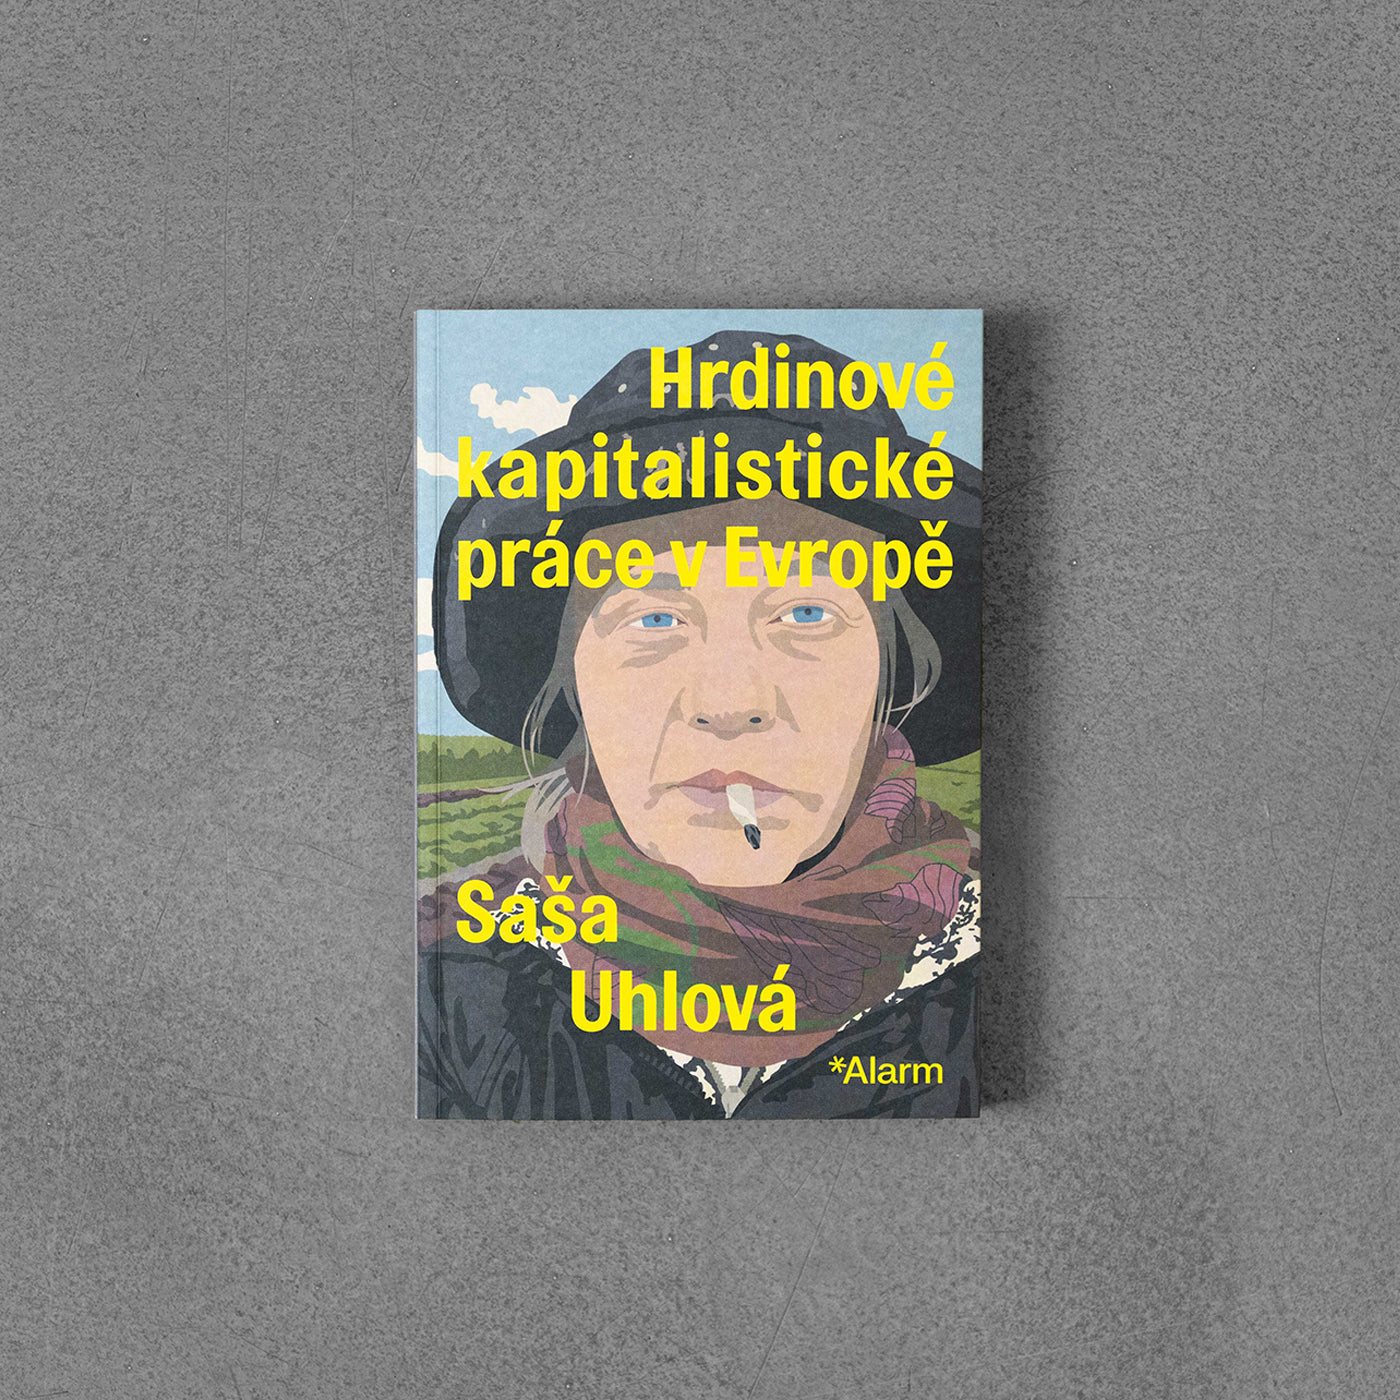 Hrdinové kapitalistické práce v Evropě - Saša Uhlová